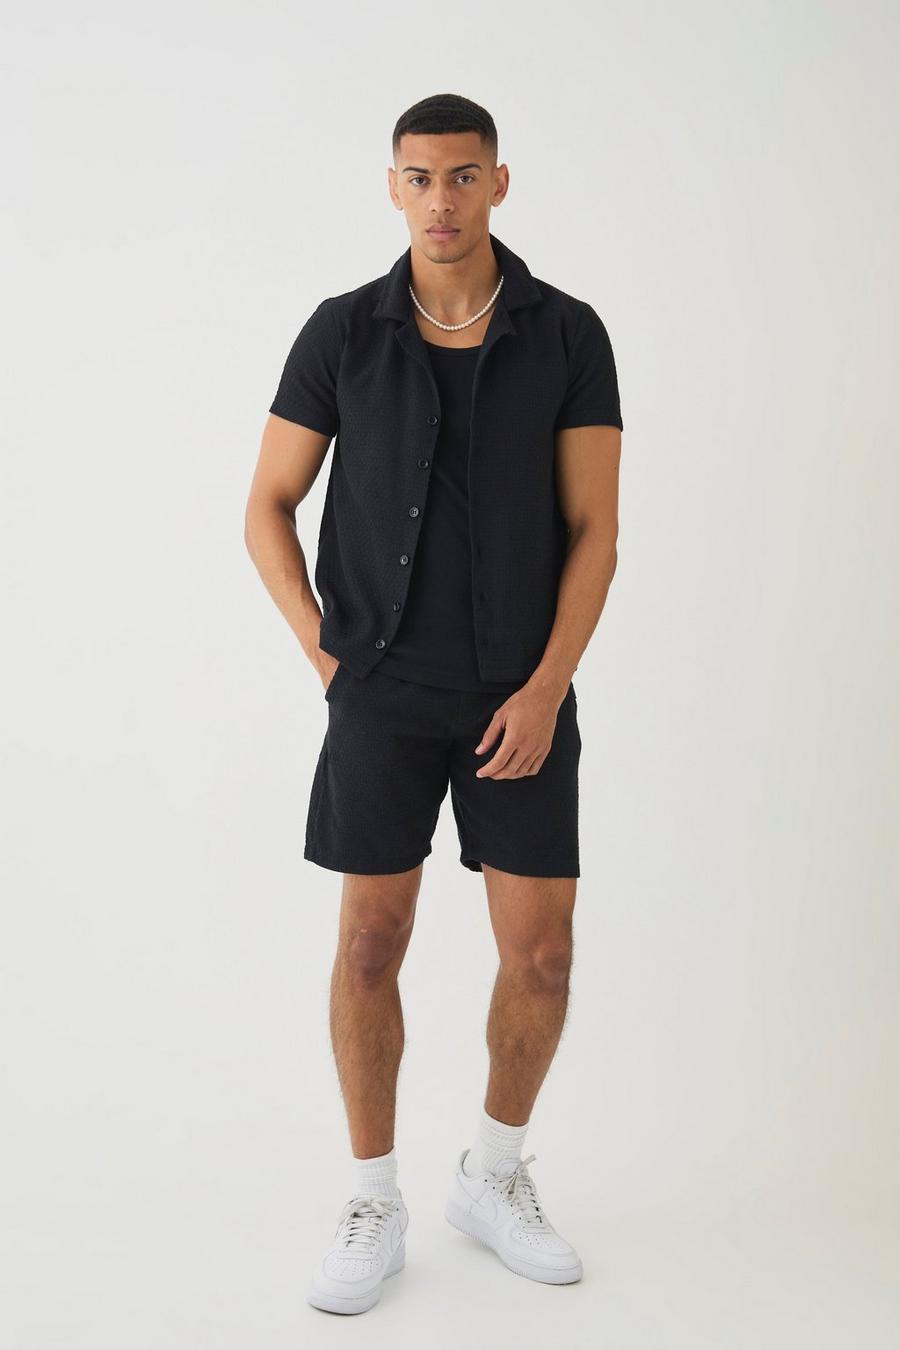 Black Jacquard Woven Shirt & Short Set